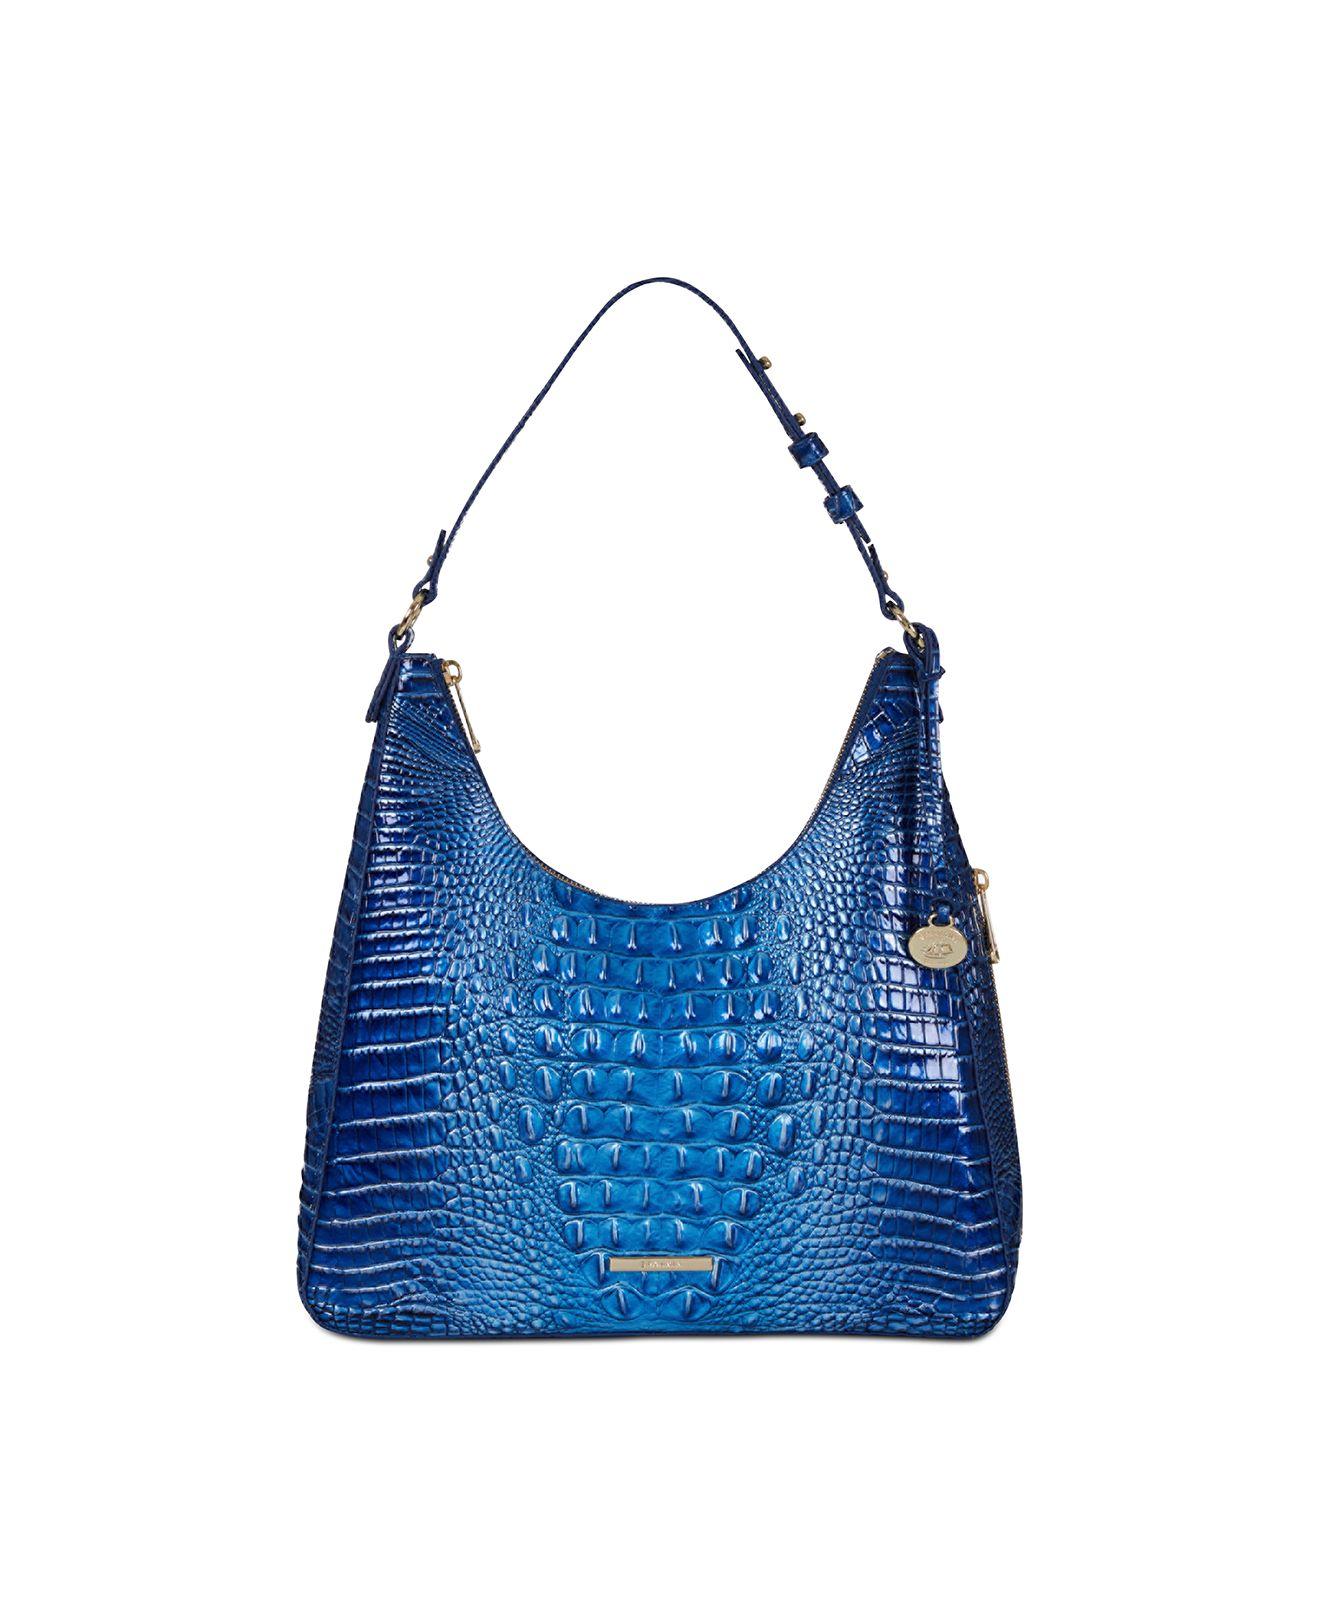 Brahmin Women's Bag - Blue